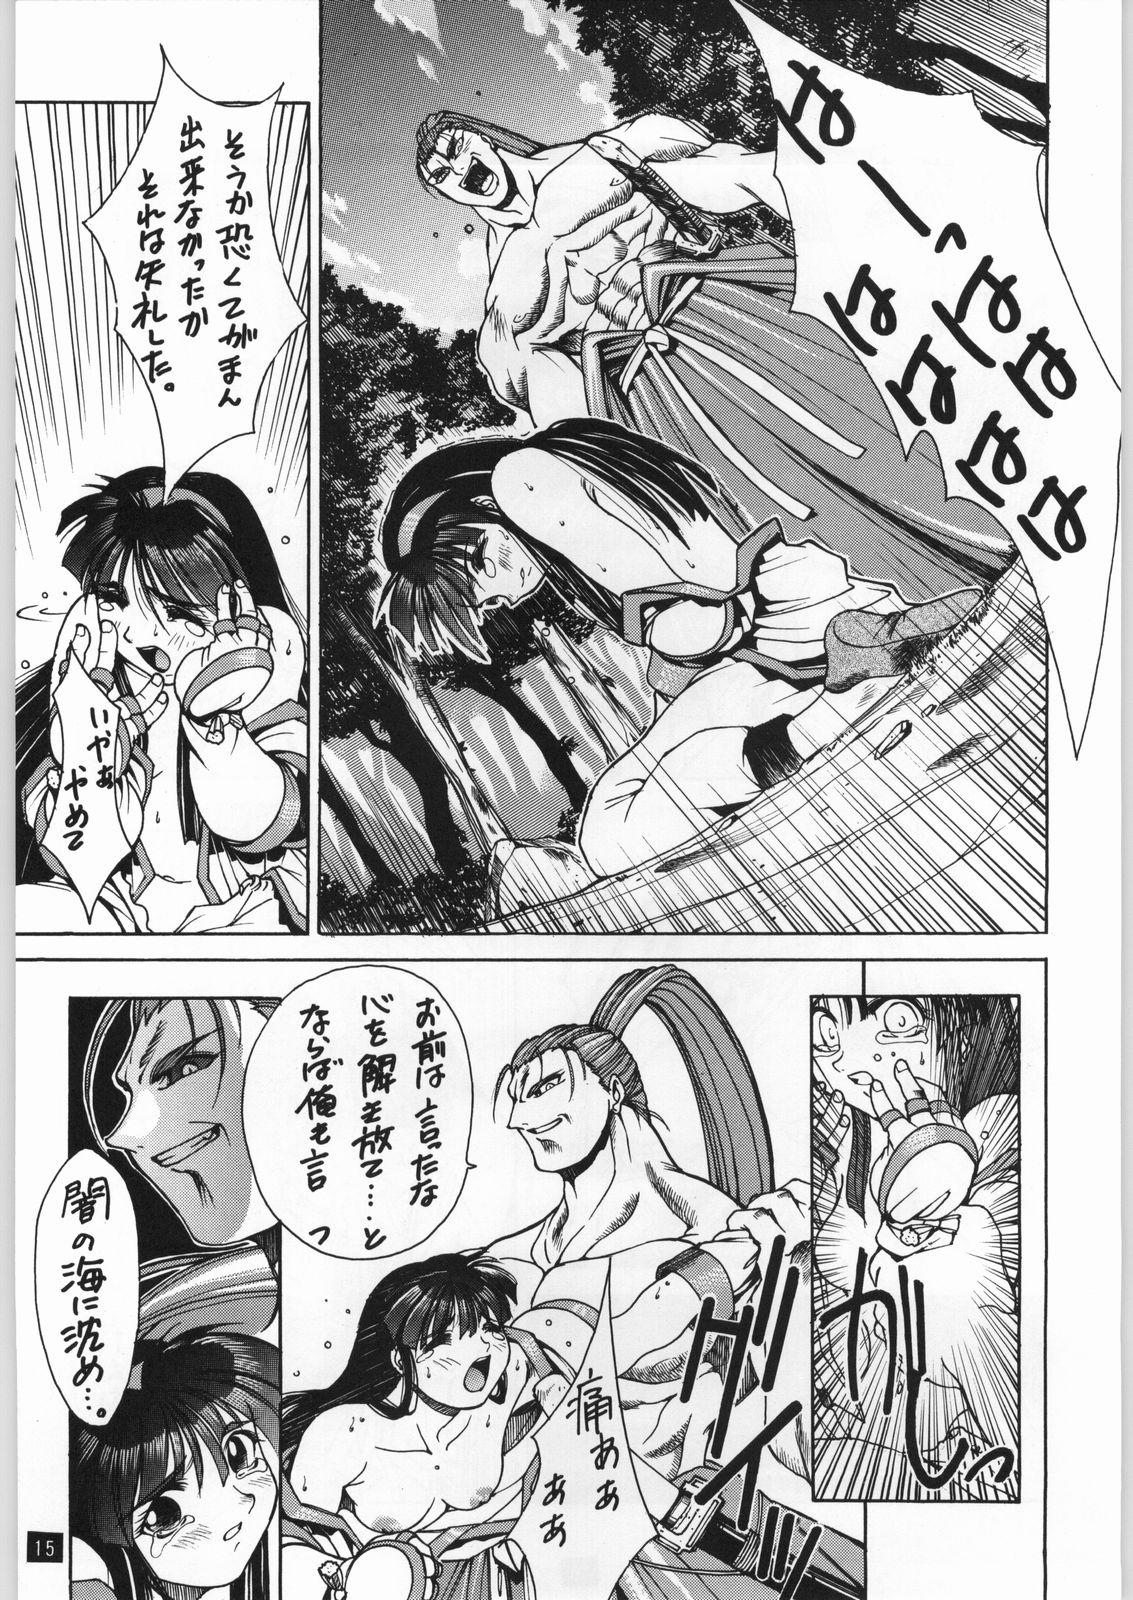 Gros Seins Seijin - Samurai spirits Wrestling - Page 7